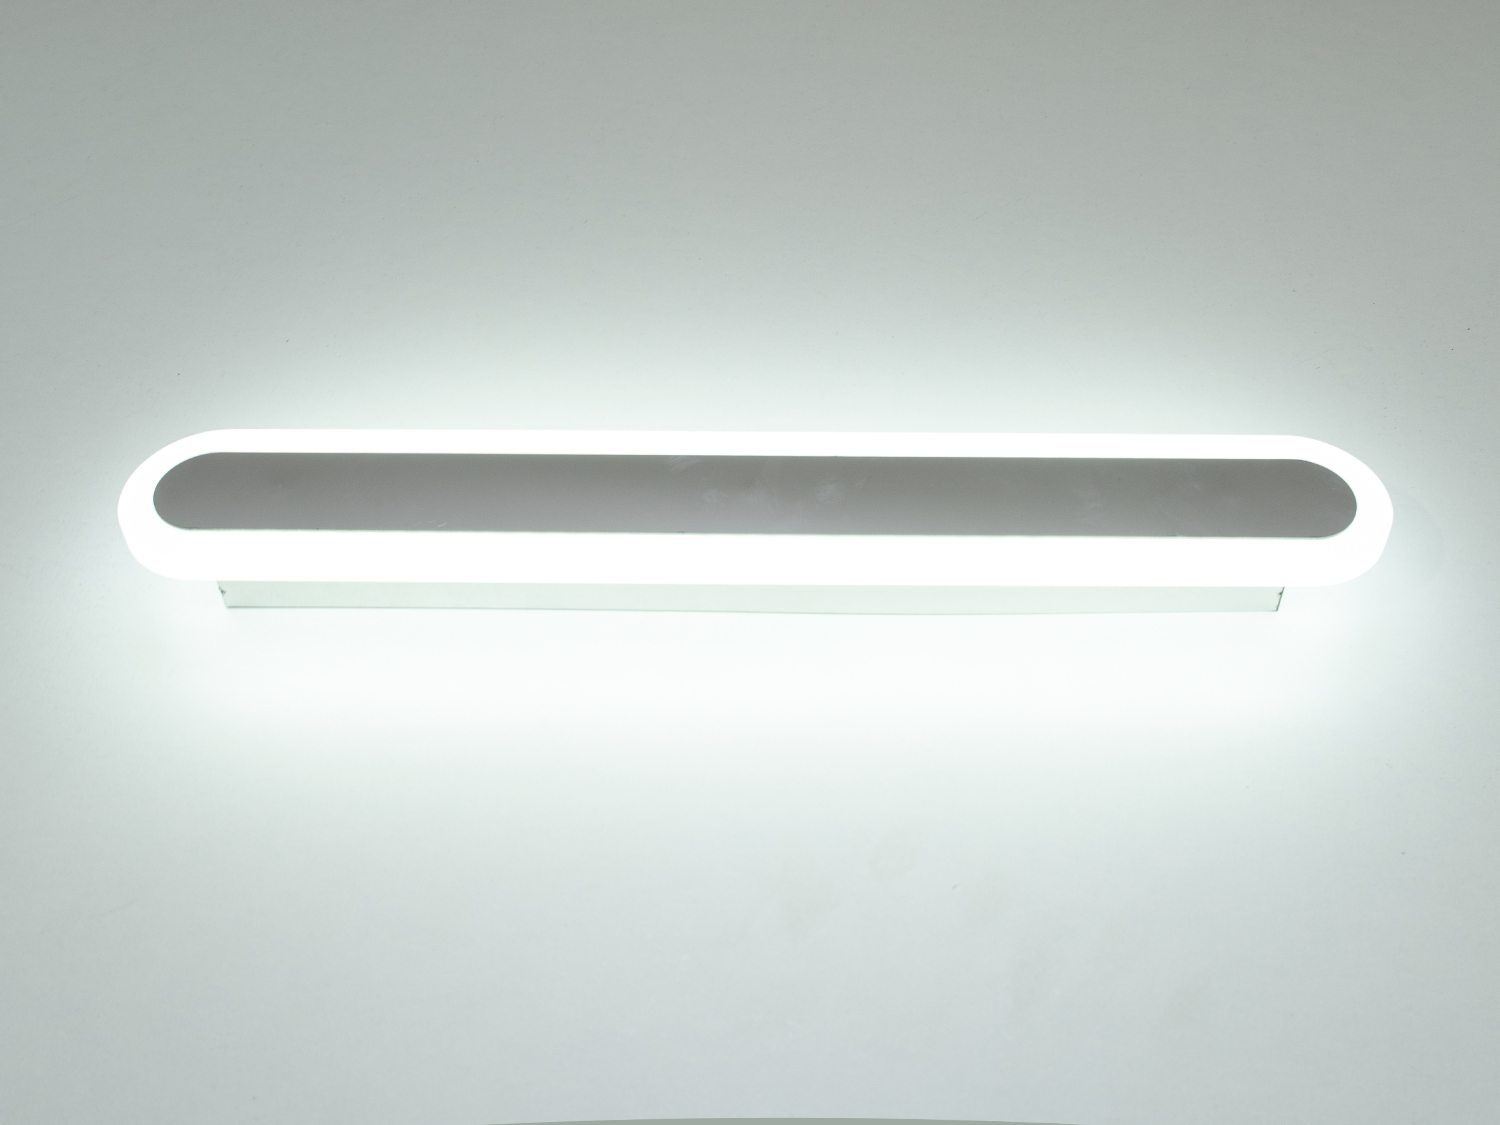 Світлодіодний світильник-бра на 20W відрізняється своєю унікальністю та сучасним дизайном. Він представляє собою елегантну і лаконічну лінію світла, яка ідеально підходить для створення чистого освітлення в будь-якому просторі, будь то спальня або кабінет. Його чисті, прямі лінії і мінімалістична естетика роблять його вишуканим доповненням до сучасного інтер'єру.
Світильник-бра складається з довгої світлодіодної панелі, обрамленої тонкою акриловою обідкою, що надає йому витонченого зовнішнього вигляду. Металева основа світильника має ненав'язливий хромовий матовий колір, що контрастує з яскравістю світлодіодів, створюючи візуальний інтерес і глибину. Відсутність видимих кріплень і кабелів посилює враження легкості та плавності дизайну.
Освітлення від цього світильника не мерехтить, що робить його безпечним для очей і забезпечує комфорт при його використанні протягом тривалого часу. Це особливо важливо, коли світильник використовується в якості додаткового джерела світла в кабінеті або як нічне освітлення в спальні.
Великий термін використання є однією з ключових переваг світлодіодних світильників, і цей бра не є винятком. Його світлодіоди розраховані на довгий термін служби, забезпечуючи надійне та енергоефективне освітлення, що знижує потребу в частій заміні світлодіодної стрічки і допомагає економити витрати на електроенергію.
Світильник-бра може ефективно доповнити будь-який інтер'єр, від класичного до ультрамодерного, додавши стрункість та елегантність своїм обрисам. Його простий, але ефектний дизайн робить його ідеальним варіантом для тих, хто прагне створити спокійну, але стильну атмосферу.
Коли мова заходить про покупку, цей світильник-бра також може бути доступним варіантом для тих, хто шукає якість за розумною ціною. Його вартість і якість роблять його привабливим вибором для широкого кола покупців, що шукають не лише функціональність, але й дизайнерську цінність у своїх освітлювальних рішеннях.
У підсумку, цей світлодіодний бра не просто освітлює простір, він приносить в нього стиль та досконалість, роблячи кожну стіну полотном для вираження сучасного мистецтва освітлення.